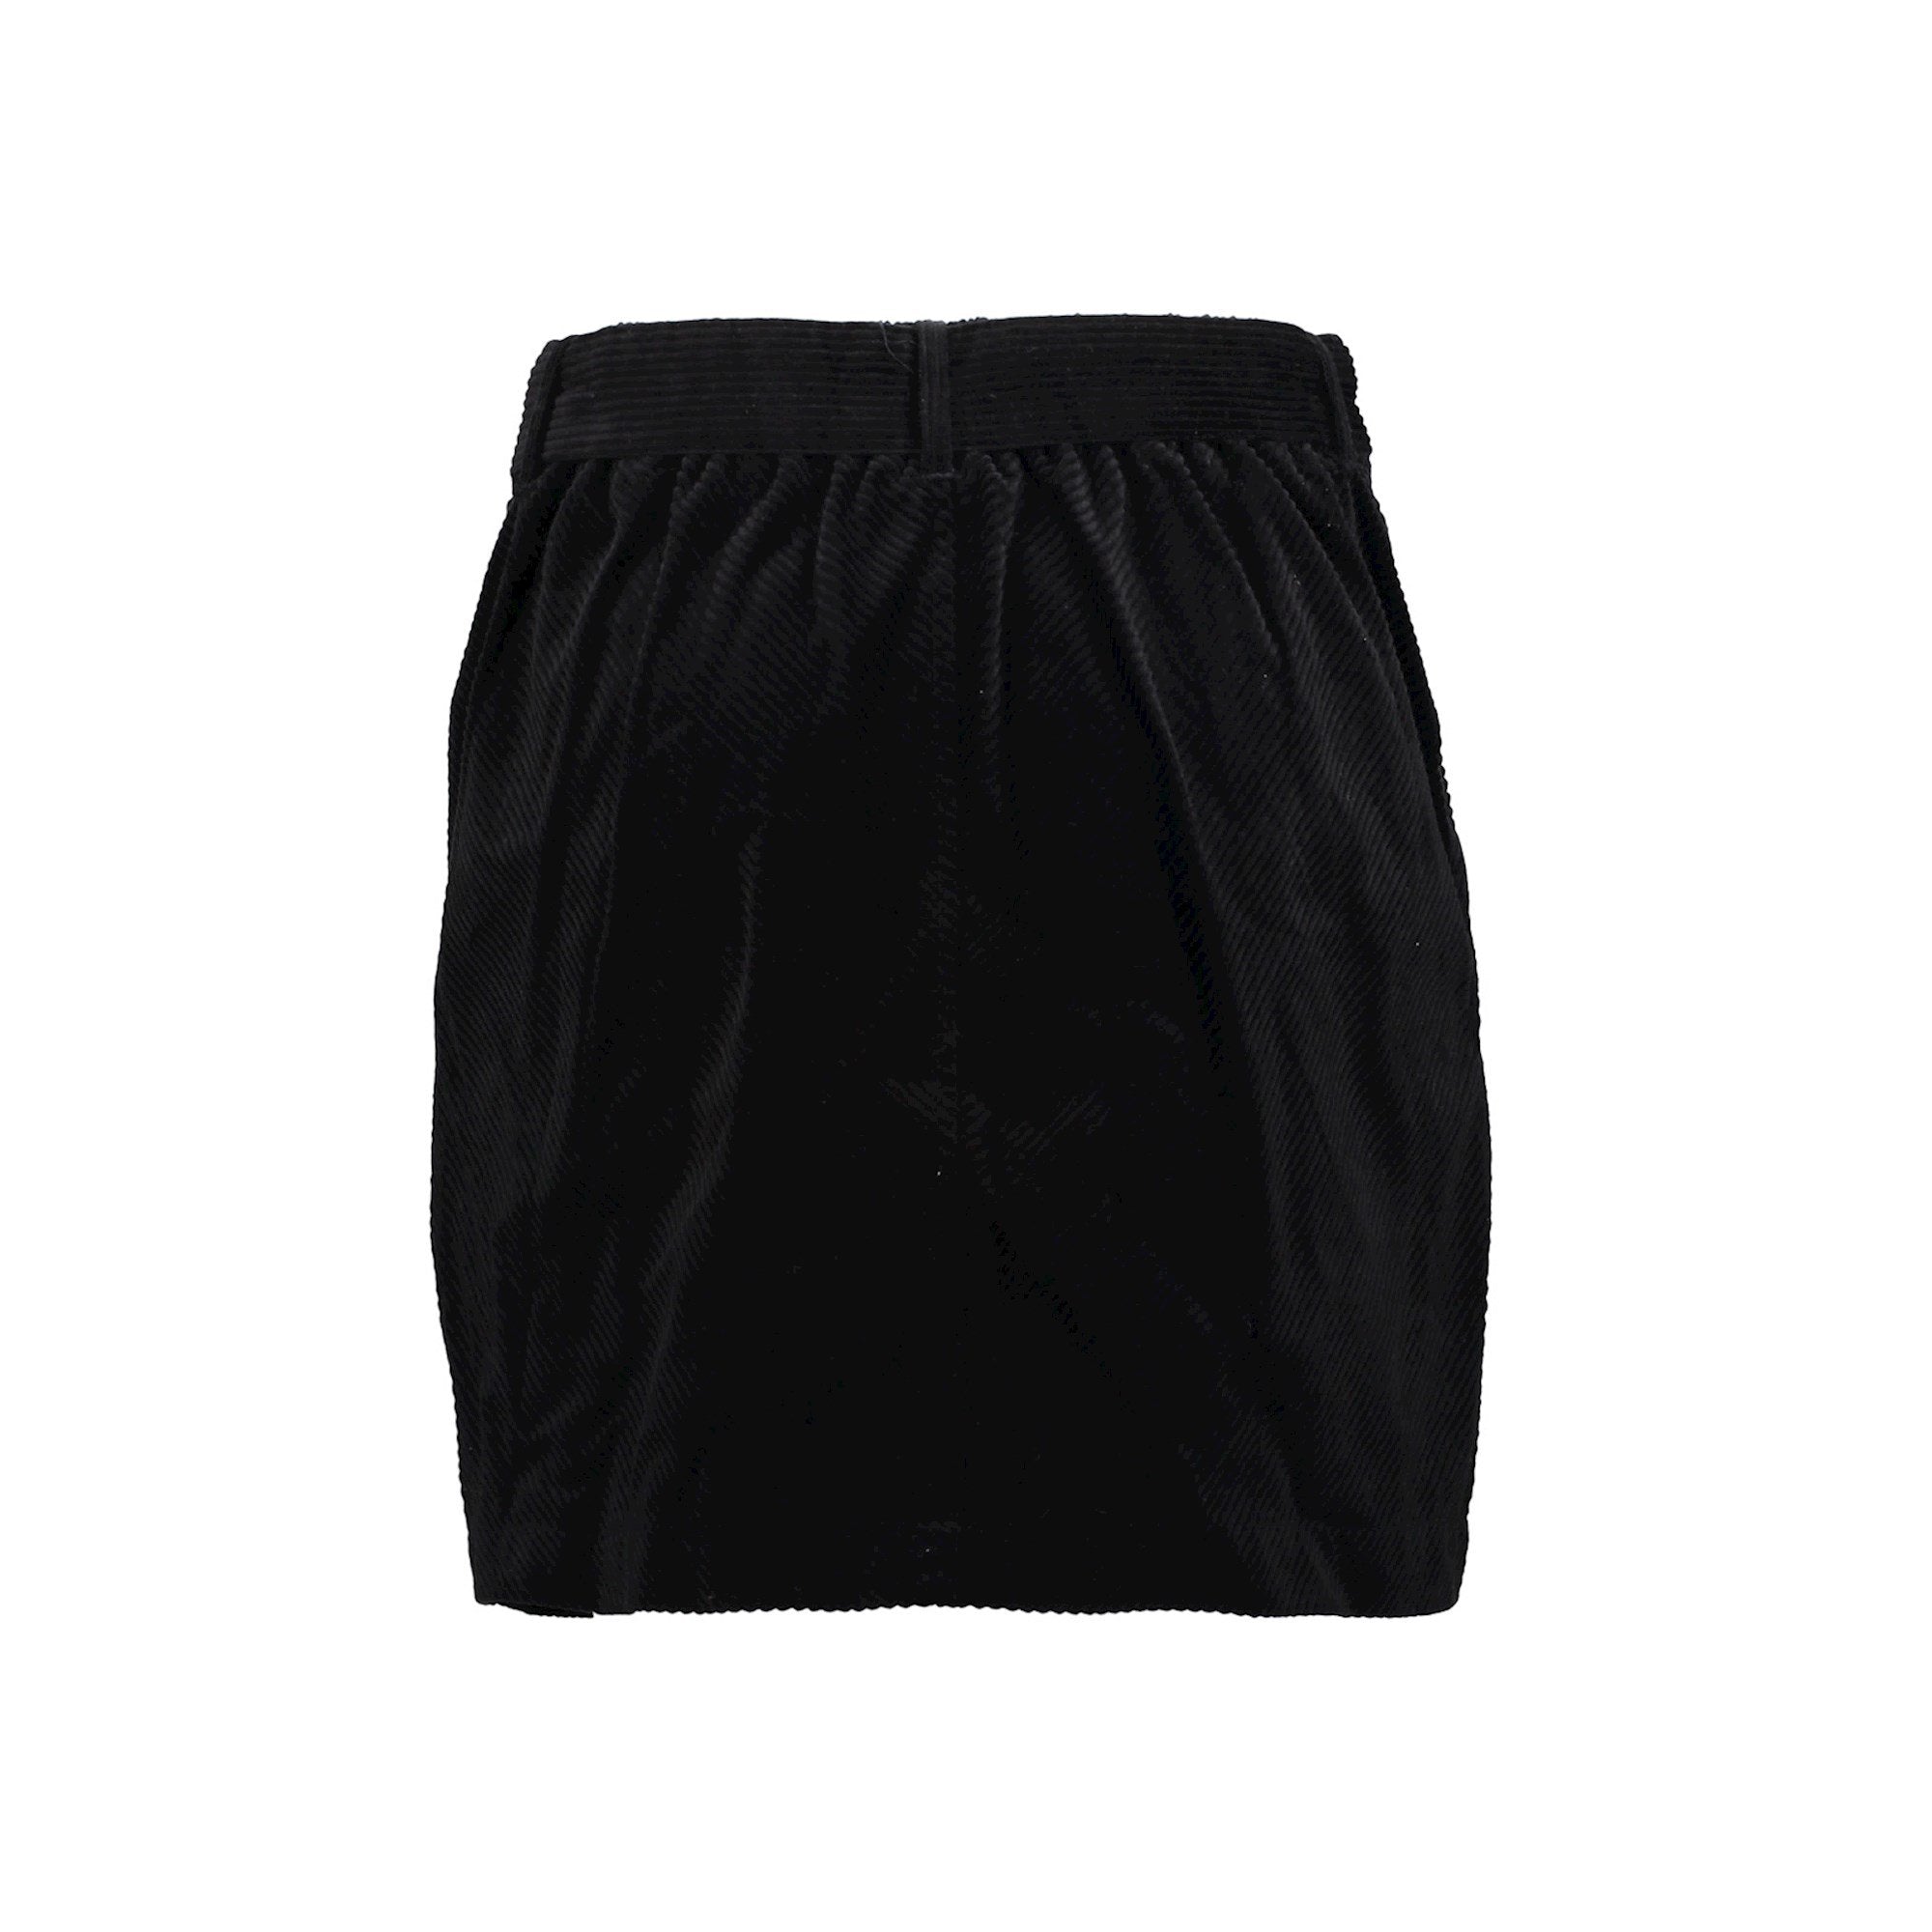 Meisjes Wide skirt + belt van Geisha in de kleur black in maat 176.